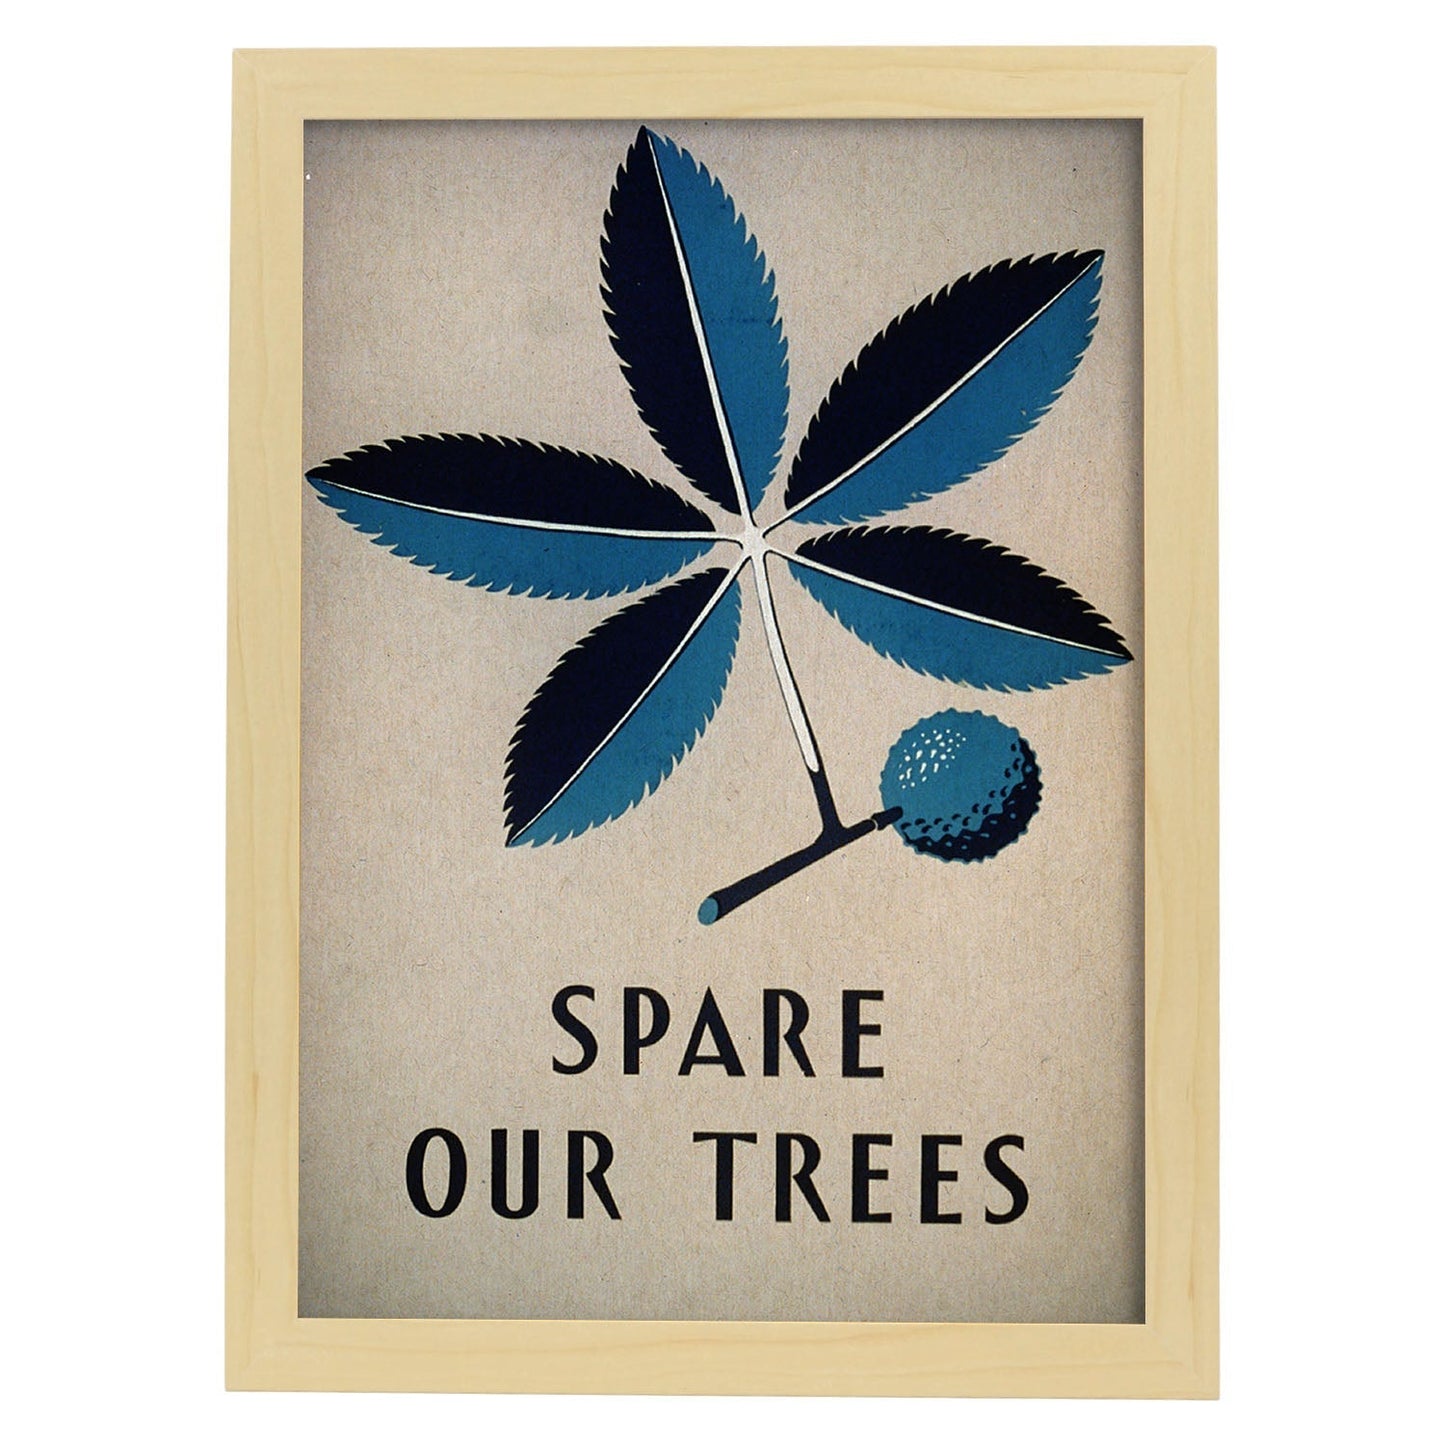 Poster vintage. Cartel vintage Spare our trees Ohio de 1938.-Artwork-Nacnic-A4-Marco Madera clara-Nacnic Estudio SL